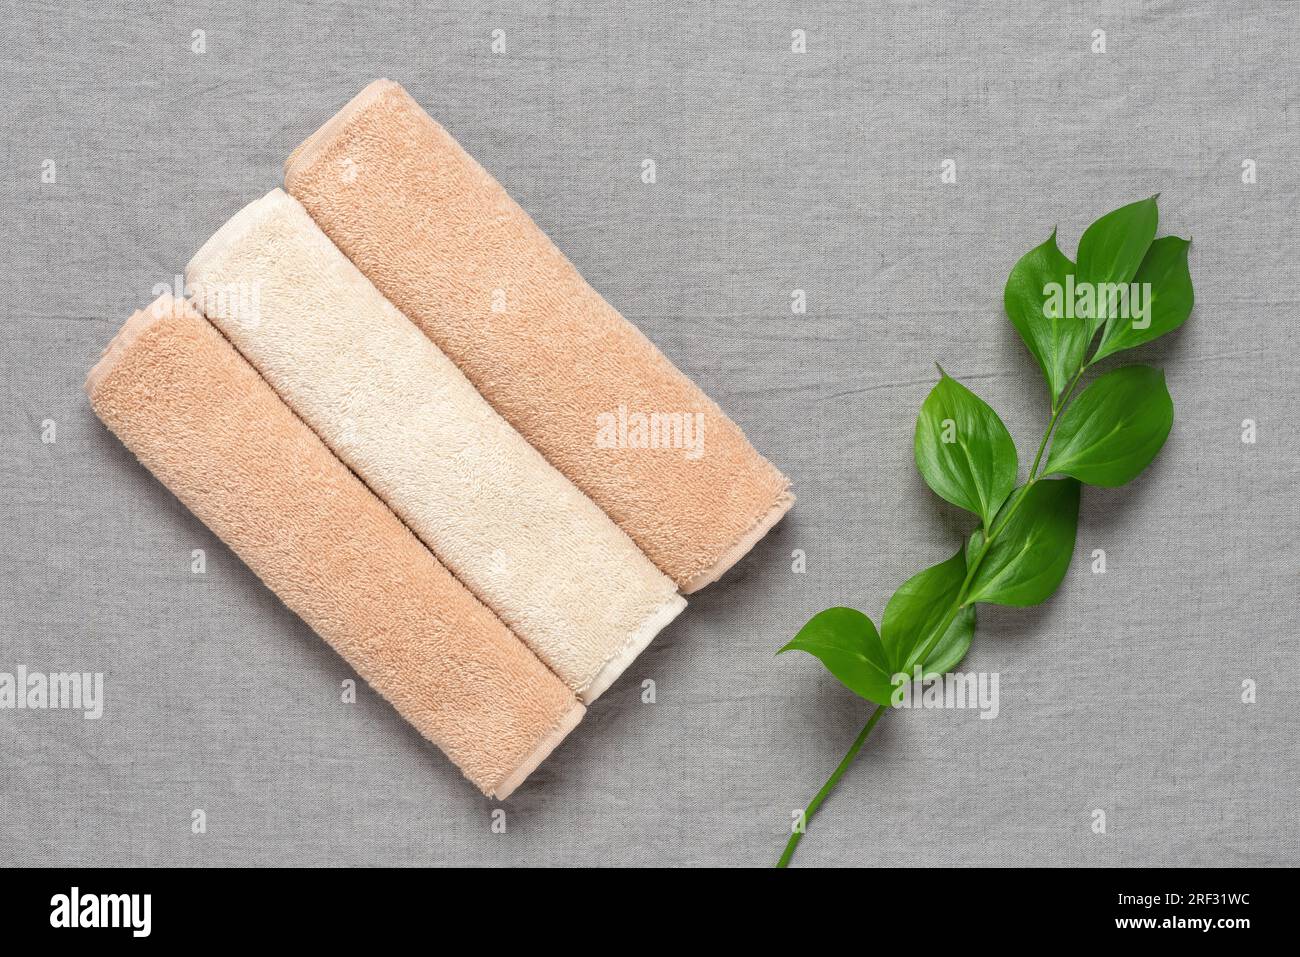 Asciugamani in spugna beige in rotoli e foglie verdi rusco su sfondo tessile di lino grigio. Vista dall'alto, base piatta. Foto Stock